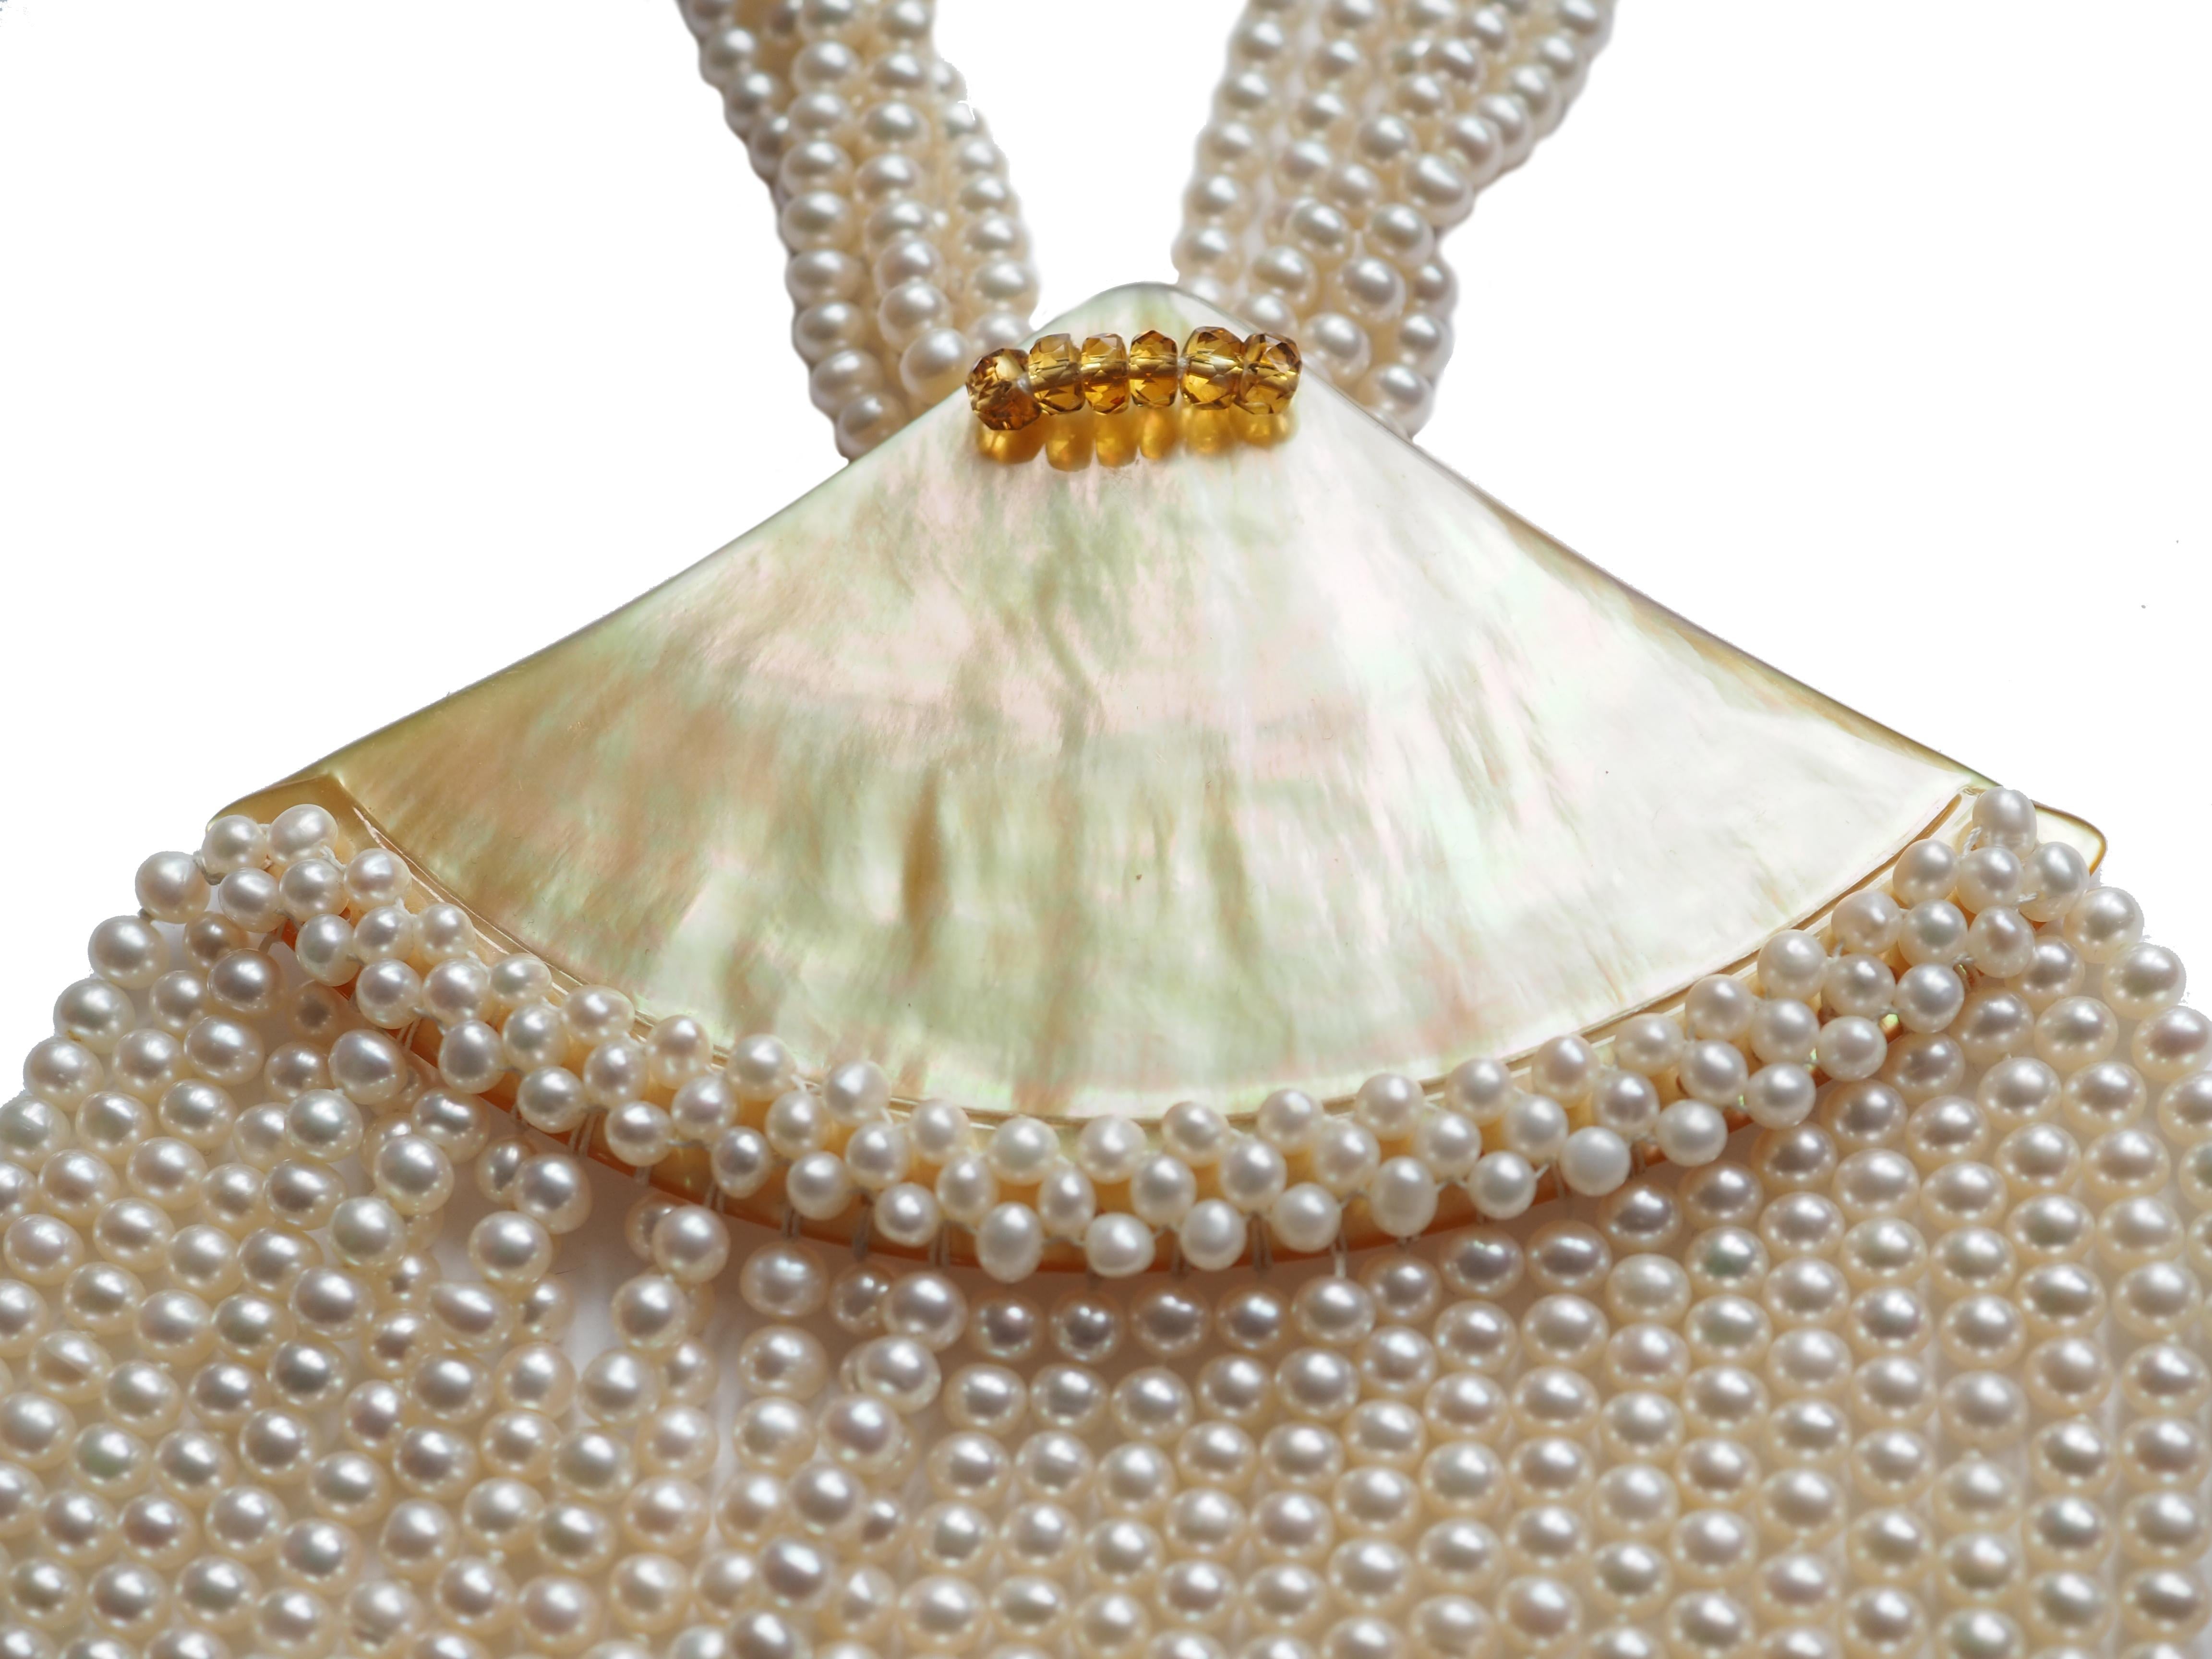 Naturel  perles blanches  collier multi-fil Collier Mère de Perles élément  Citrine bronze.
Tous les bijoux Giulia Colussi sont neufs et n'ont jamais été portés ou possédés auparavant. Chaque article arrivera à votre porte joliment emballé dans nos